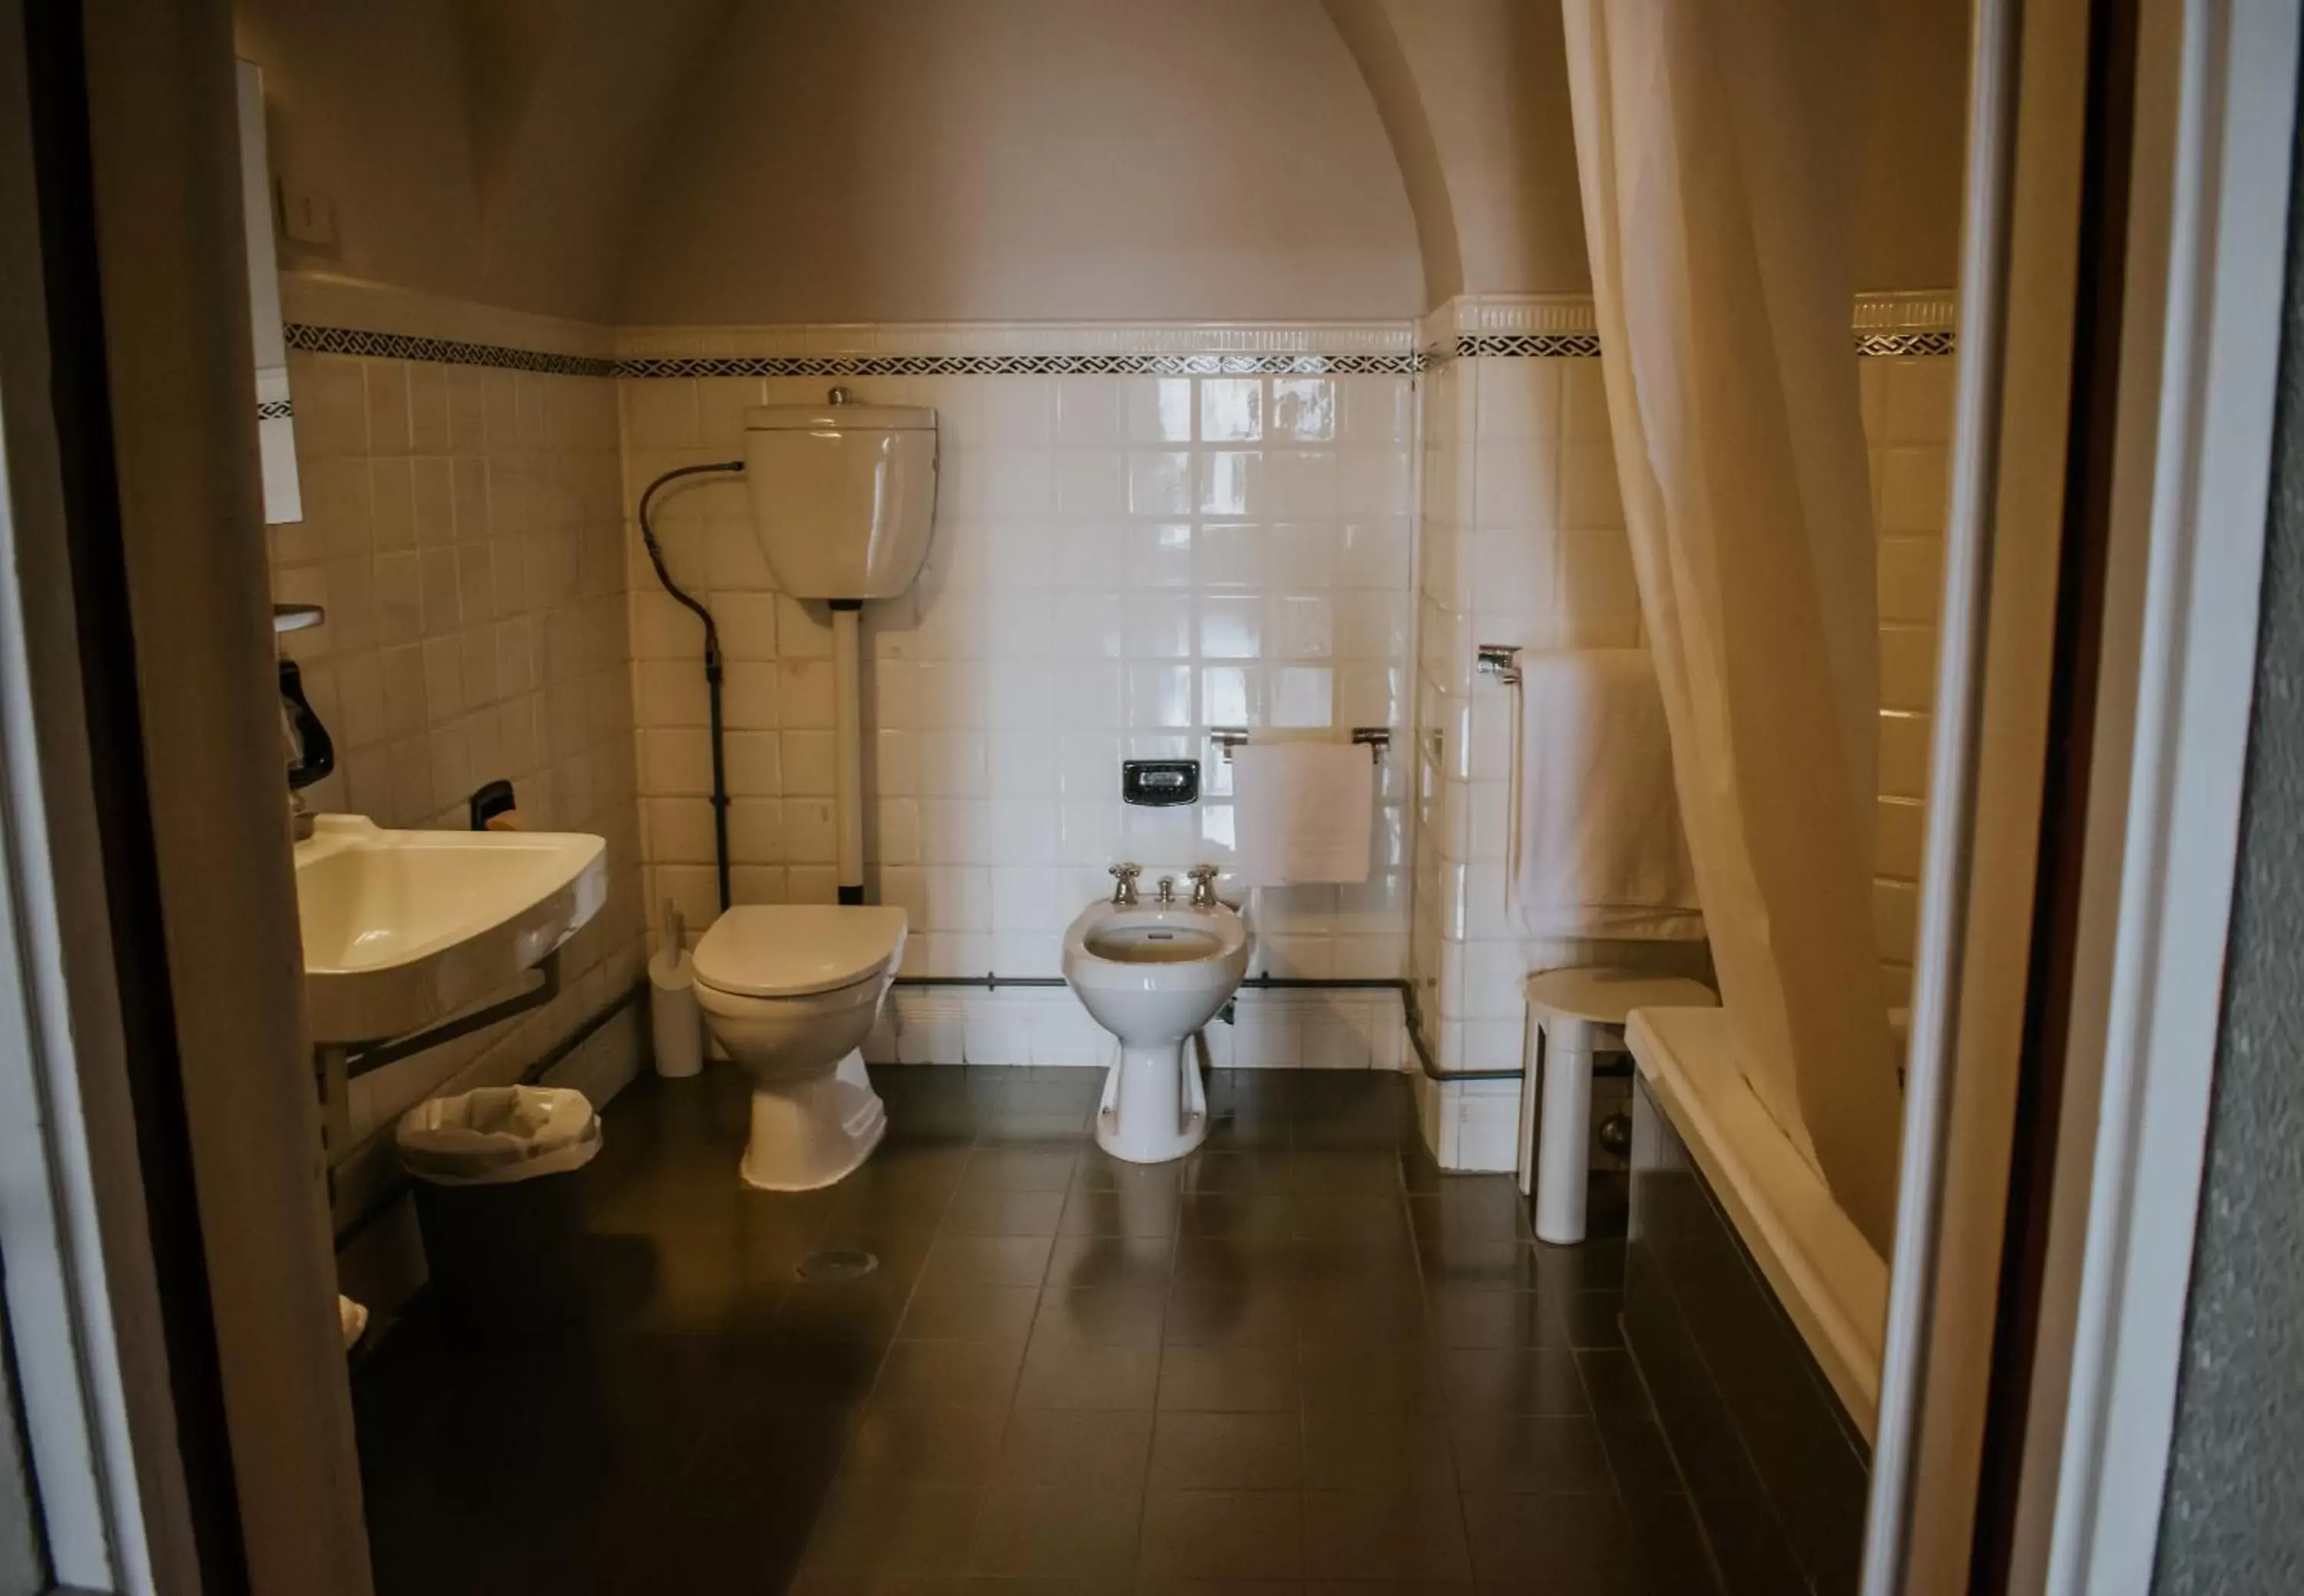 Toilet, Bathroom in Royal Victoria Hotel